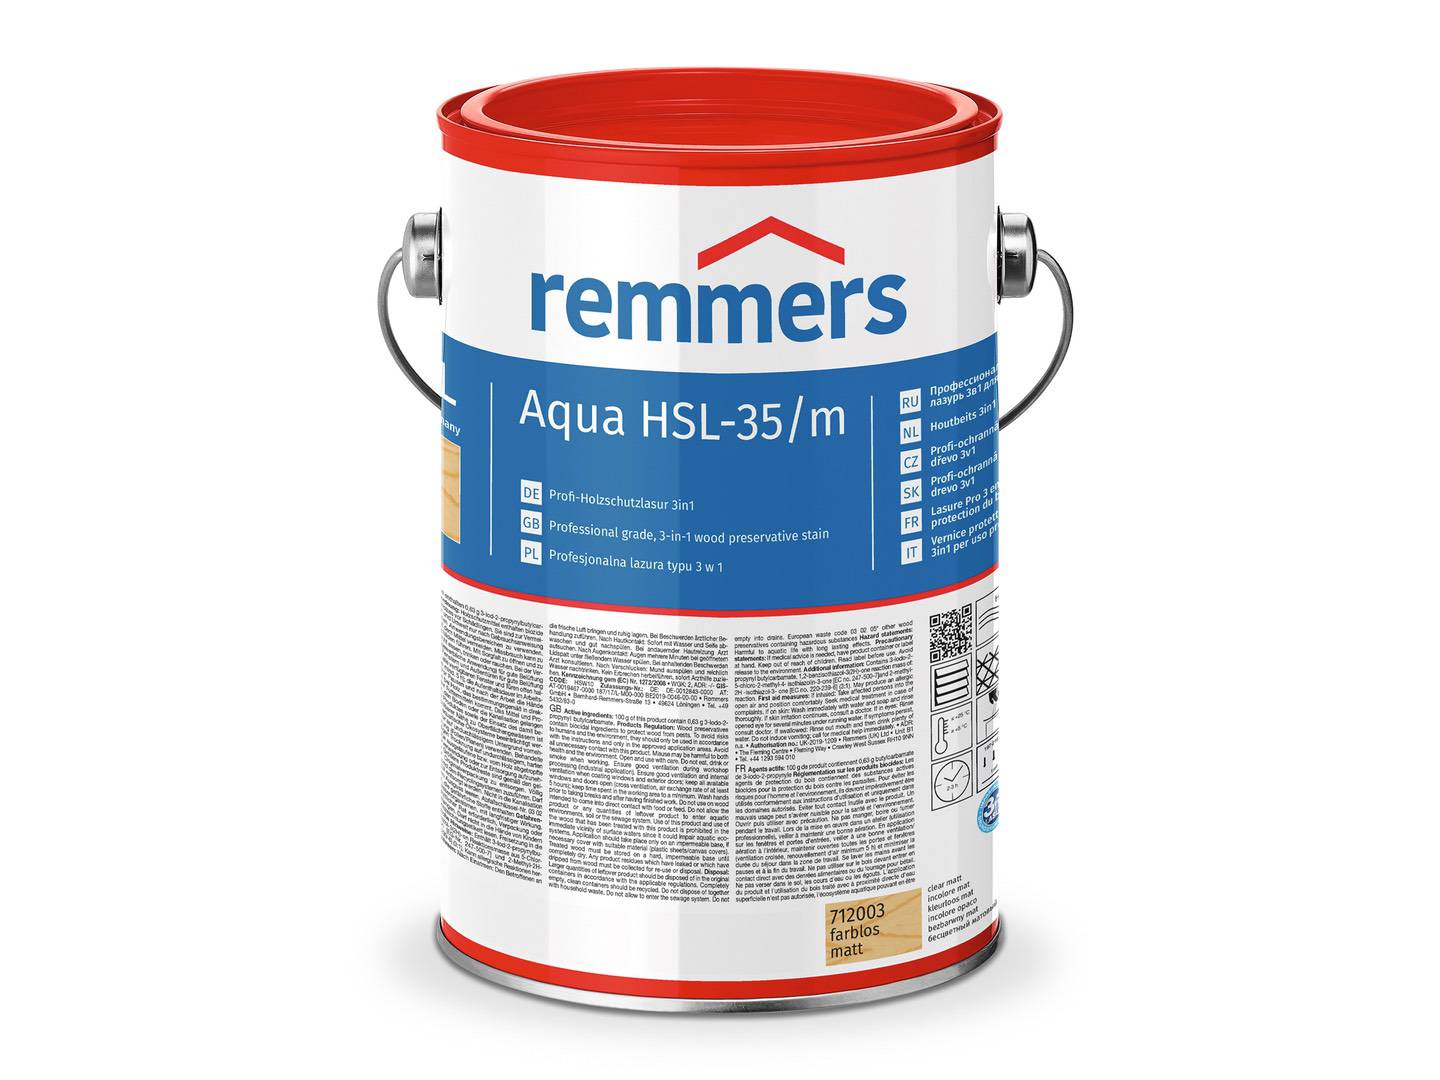 REMMERS Aqua HSL-35/m-Profi-Holzschutz-Lasur 3in1 nussbaum (RC-660) 5 l